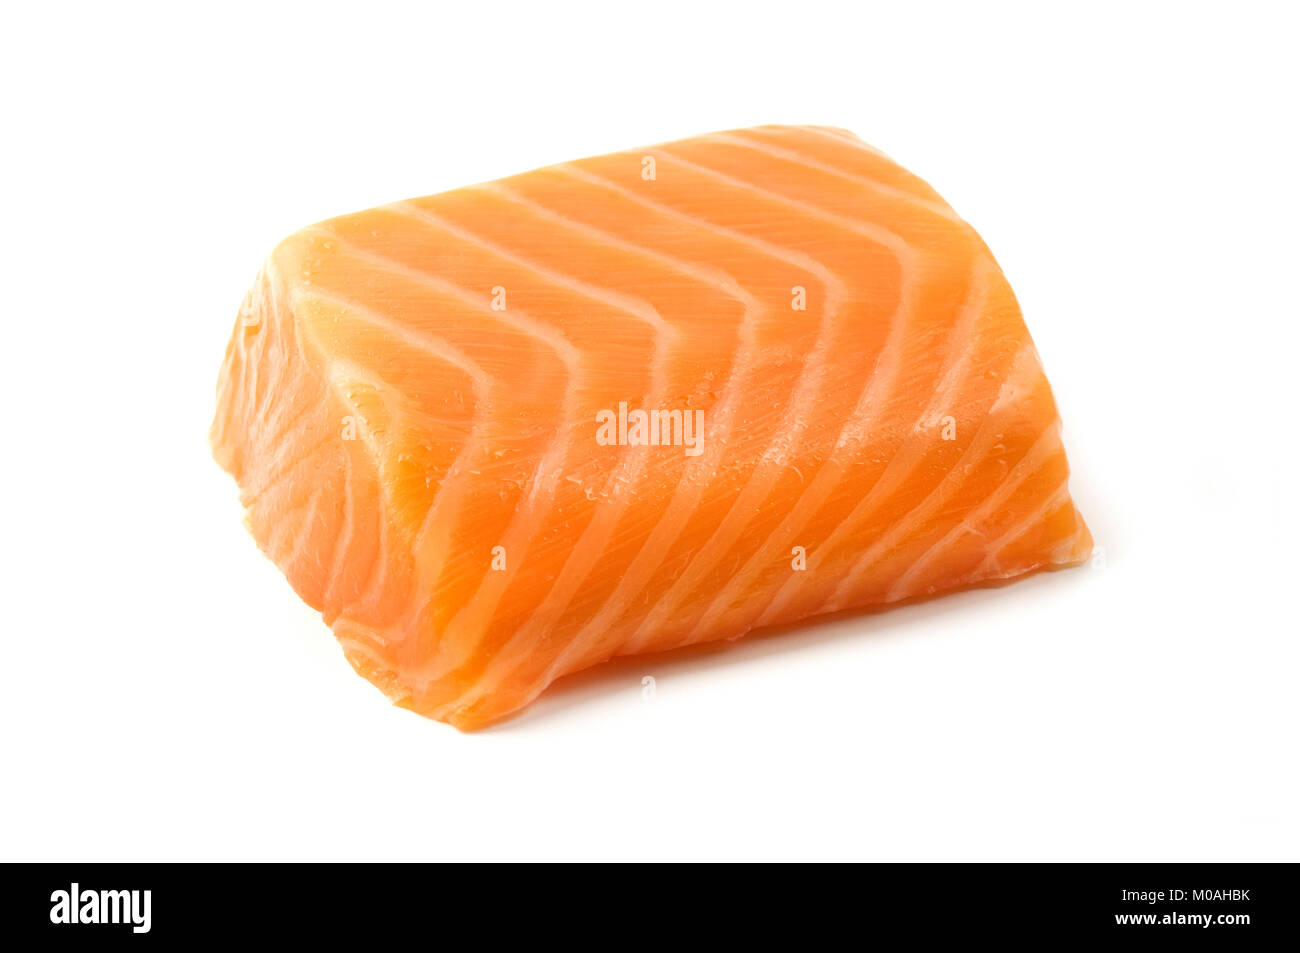 Smoked salmon fillet on a white background Stock Photo